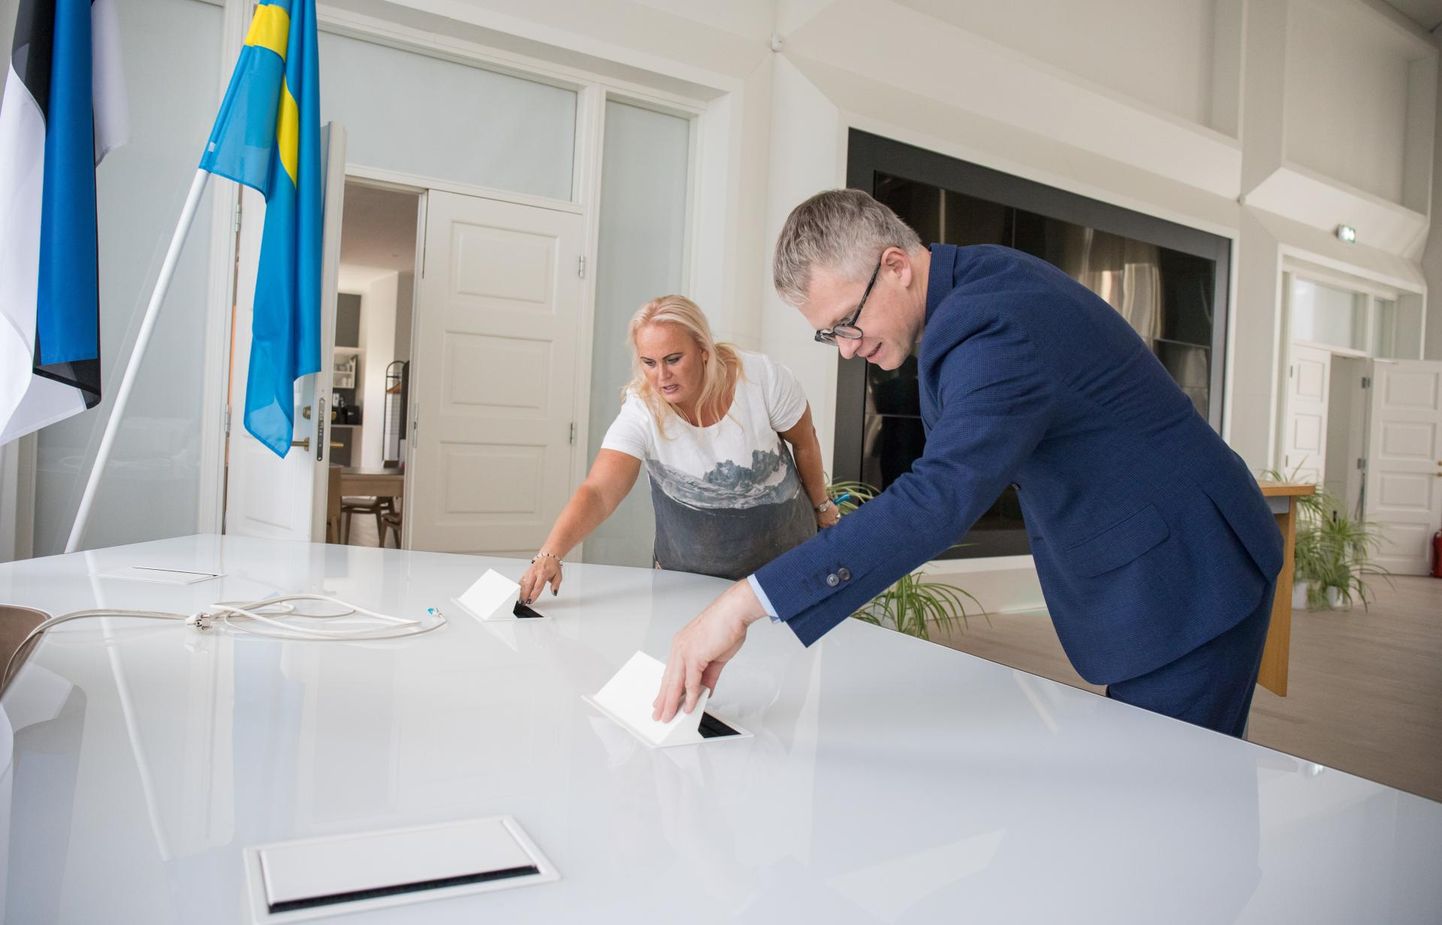 Rakvere abilinnapea Triin Varek tutvustas riigihalduse ministrile Janek Mäggile muu hulgas volikogu töölaua võimalusi.